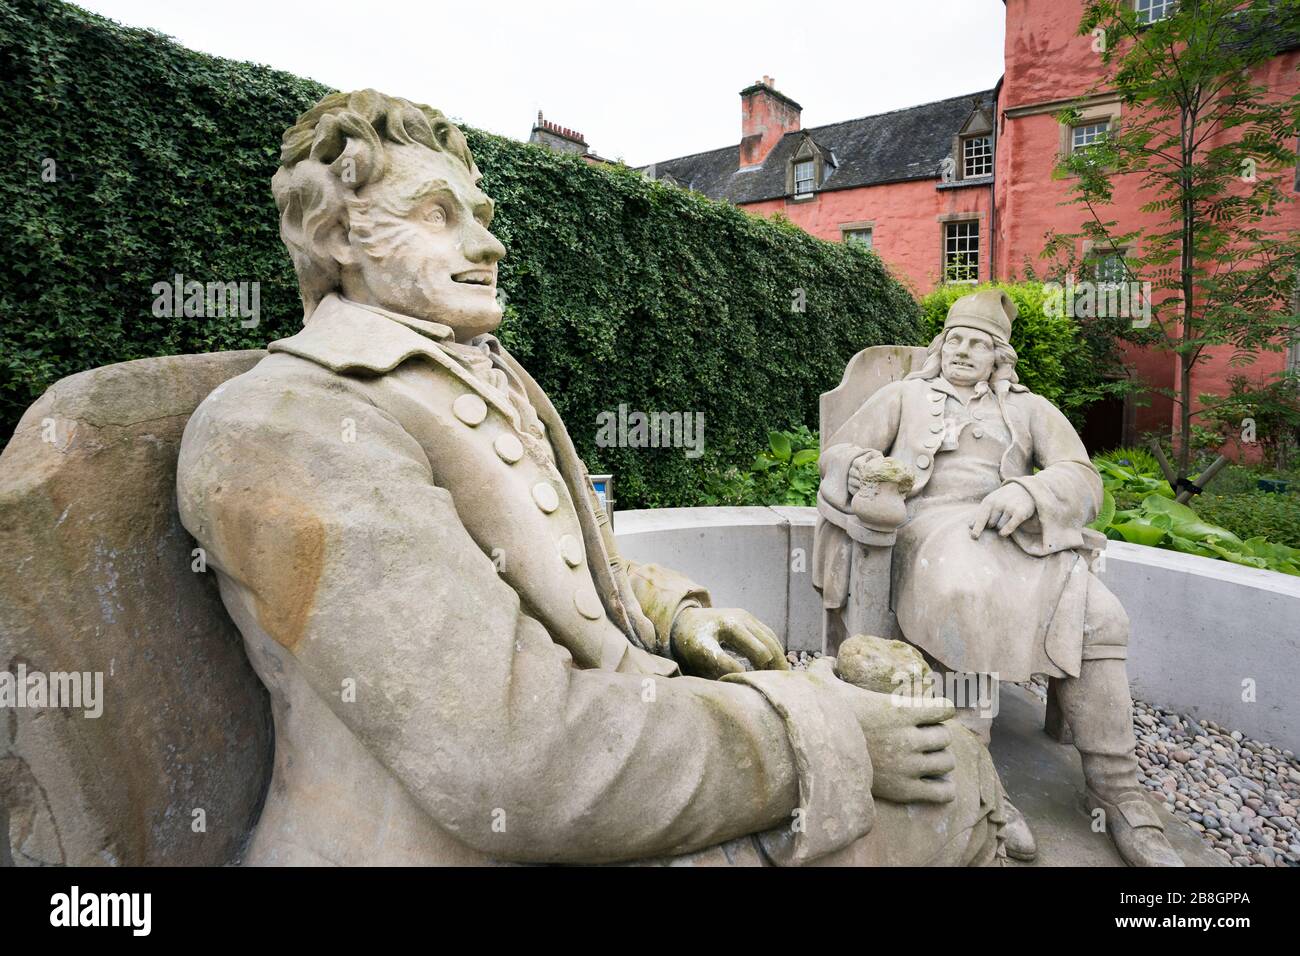 Sculpture de deux hommes Tam O'Shanter et Suter Johnnie dans les jardins de la bibliothèque Andrew Carnegie, Dunfermline; Royaume de Fife; Fife; Écosse; Royaume-Uni; Europe Banque D'Images